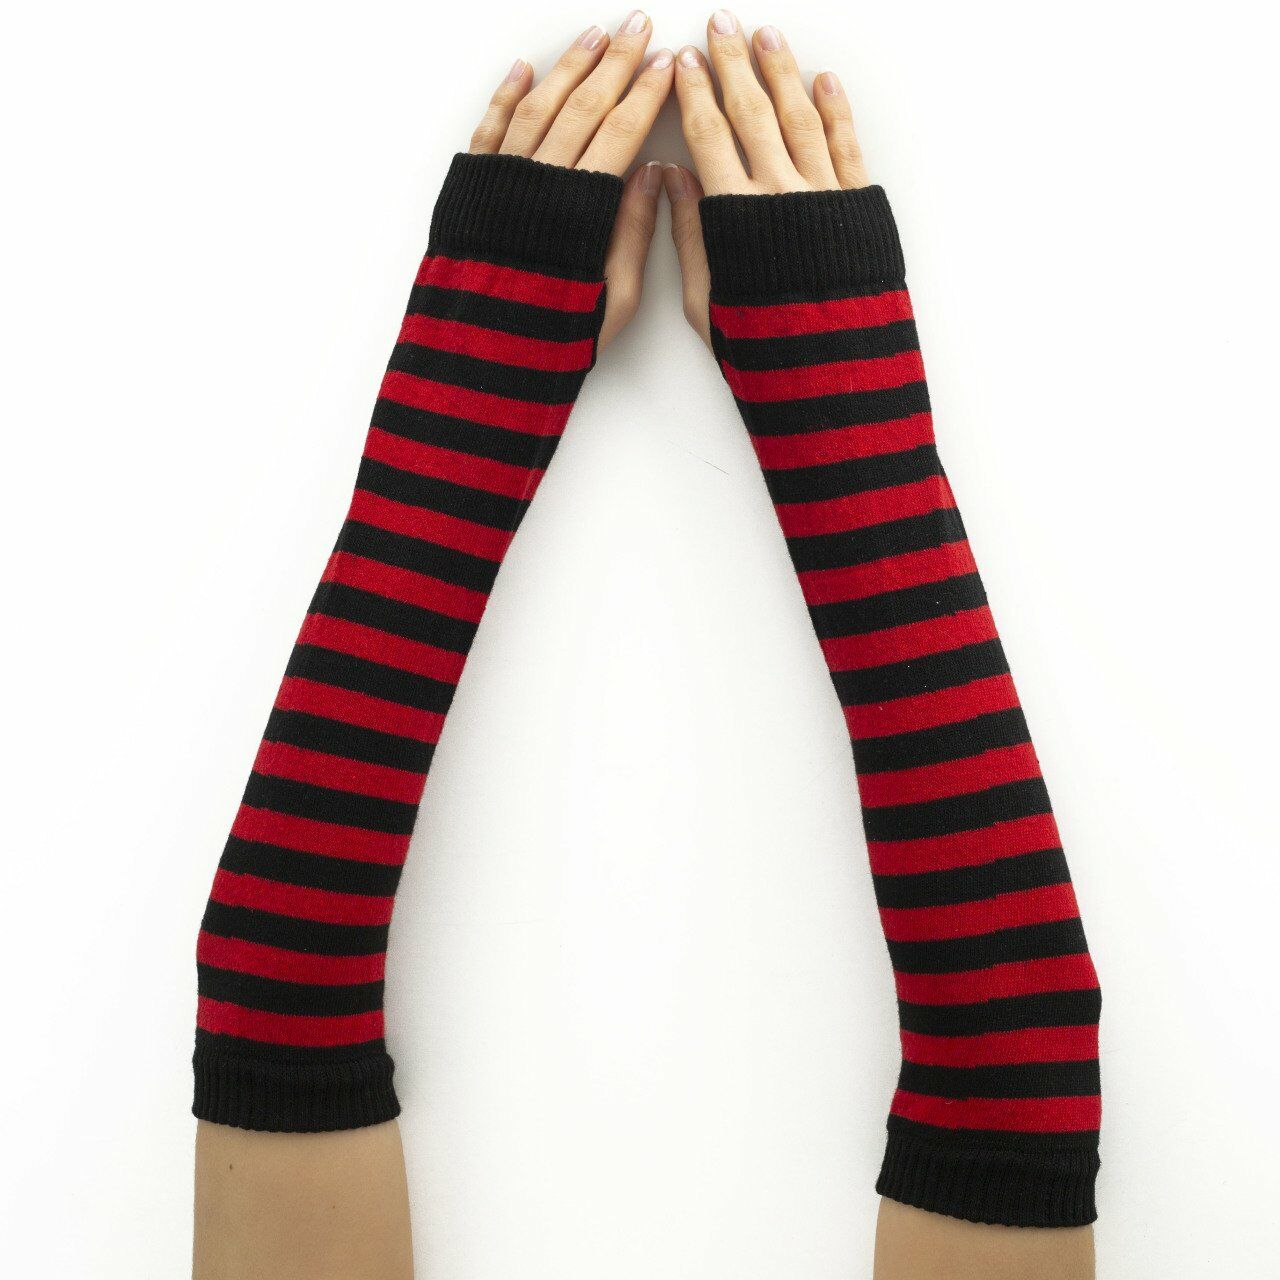 Siyah Kırmızı Renkli Kol Çorabı Eldiven